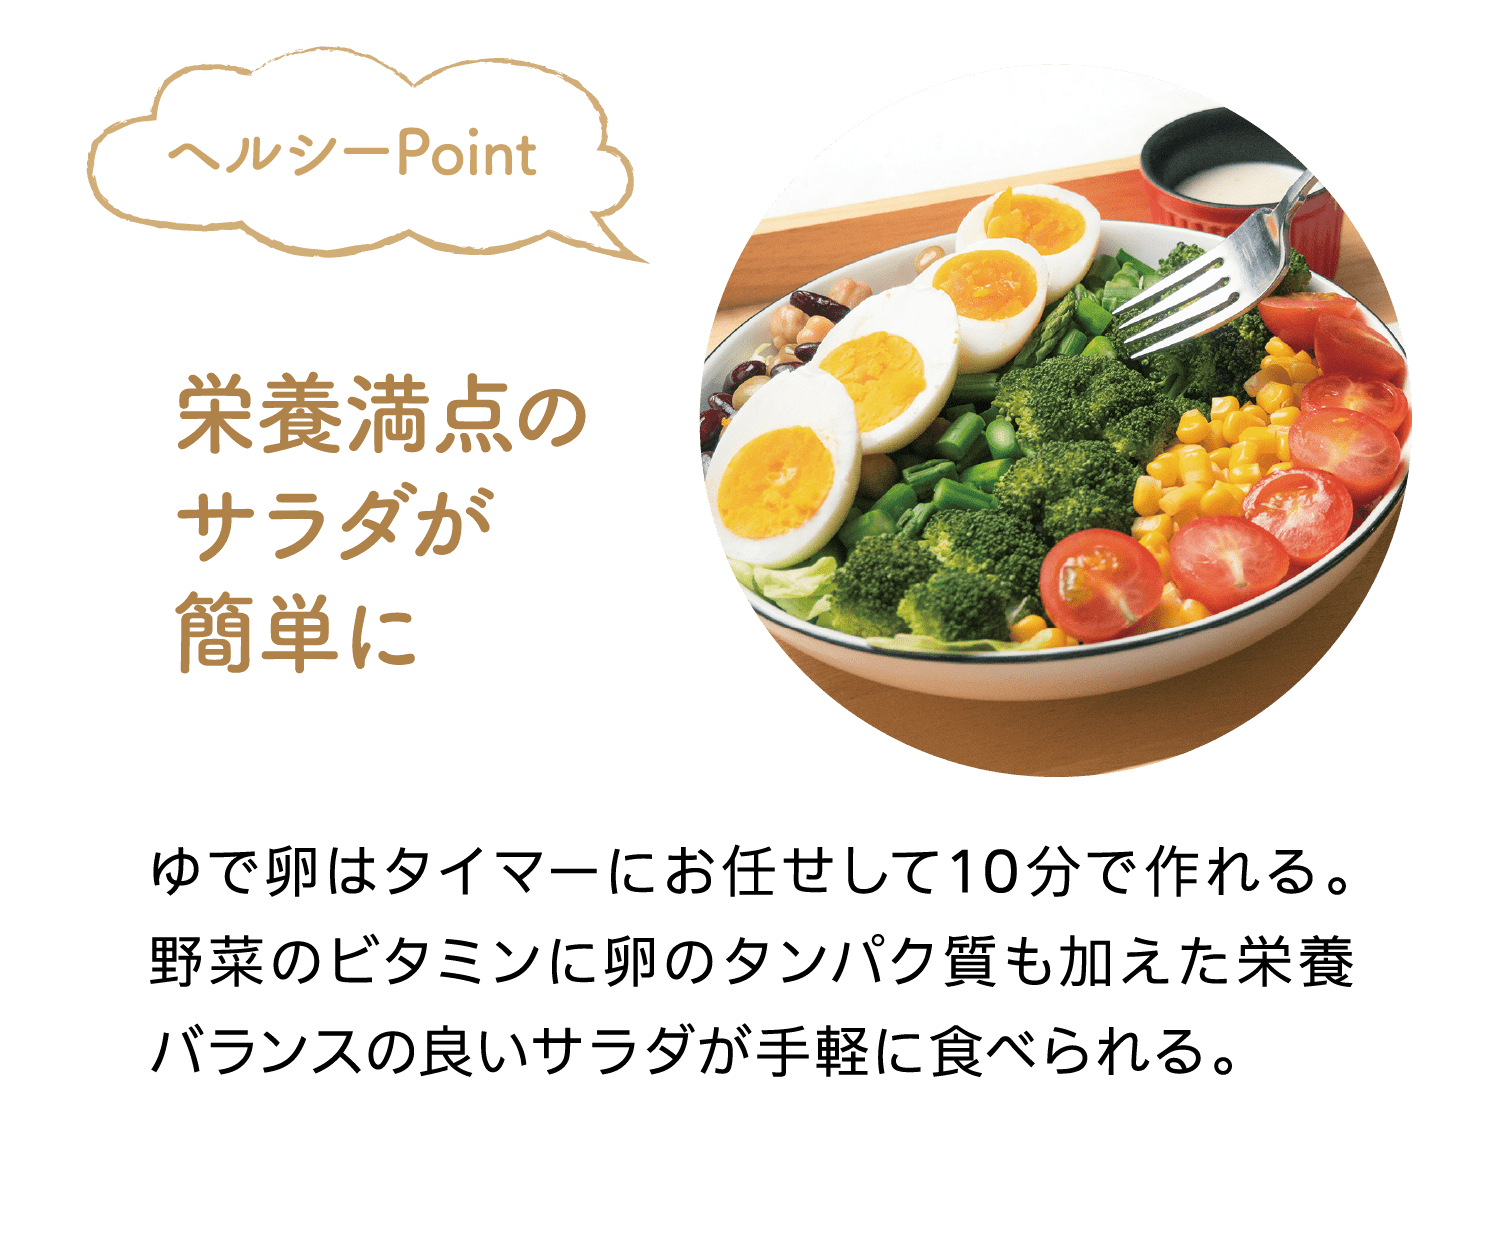 ヘルシーPoint｜栄養満点のサラダが簡単に｜ゆで卵はタイマーにお任せして10分で作れる。野菜のビタミンに卵のタンパク質も加えた栄養バランスの良いサラダが手軽に食べられる。